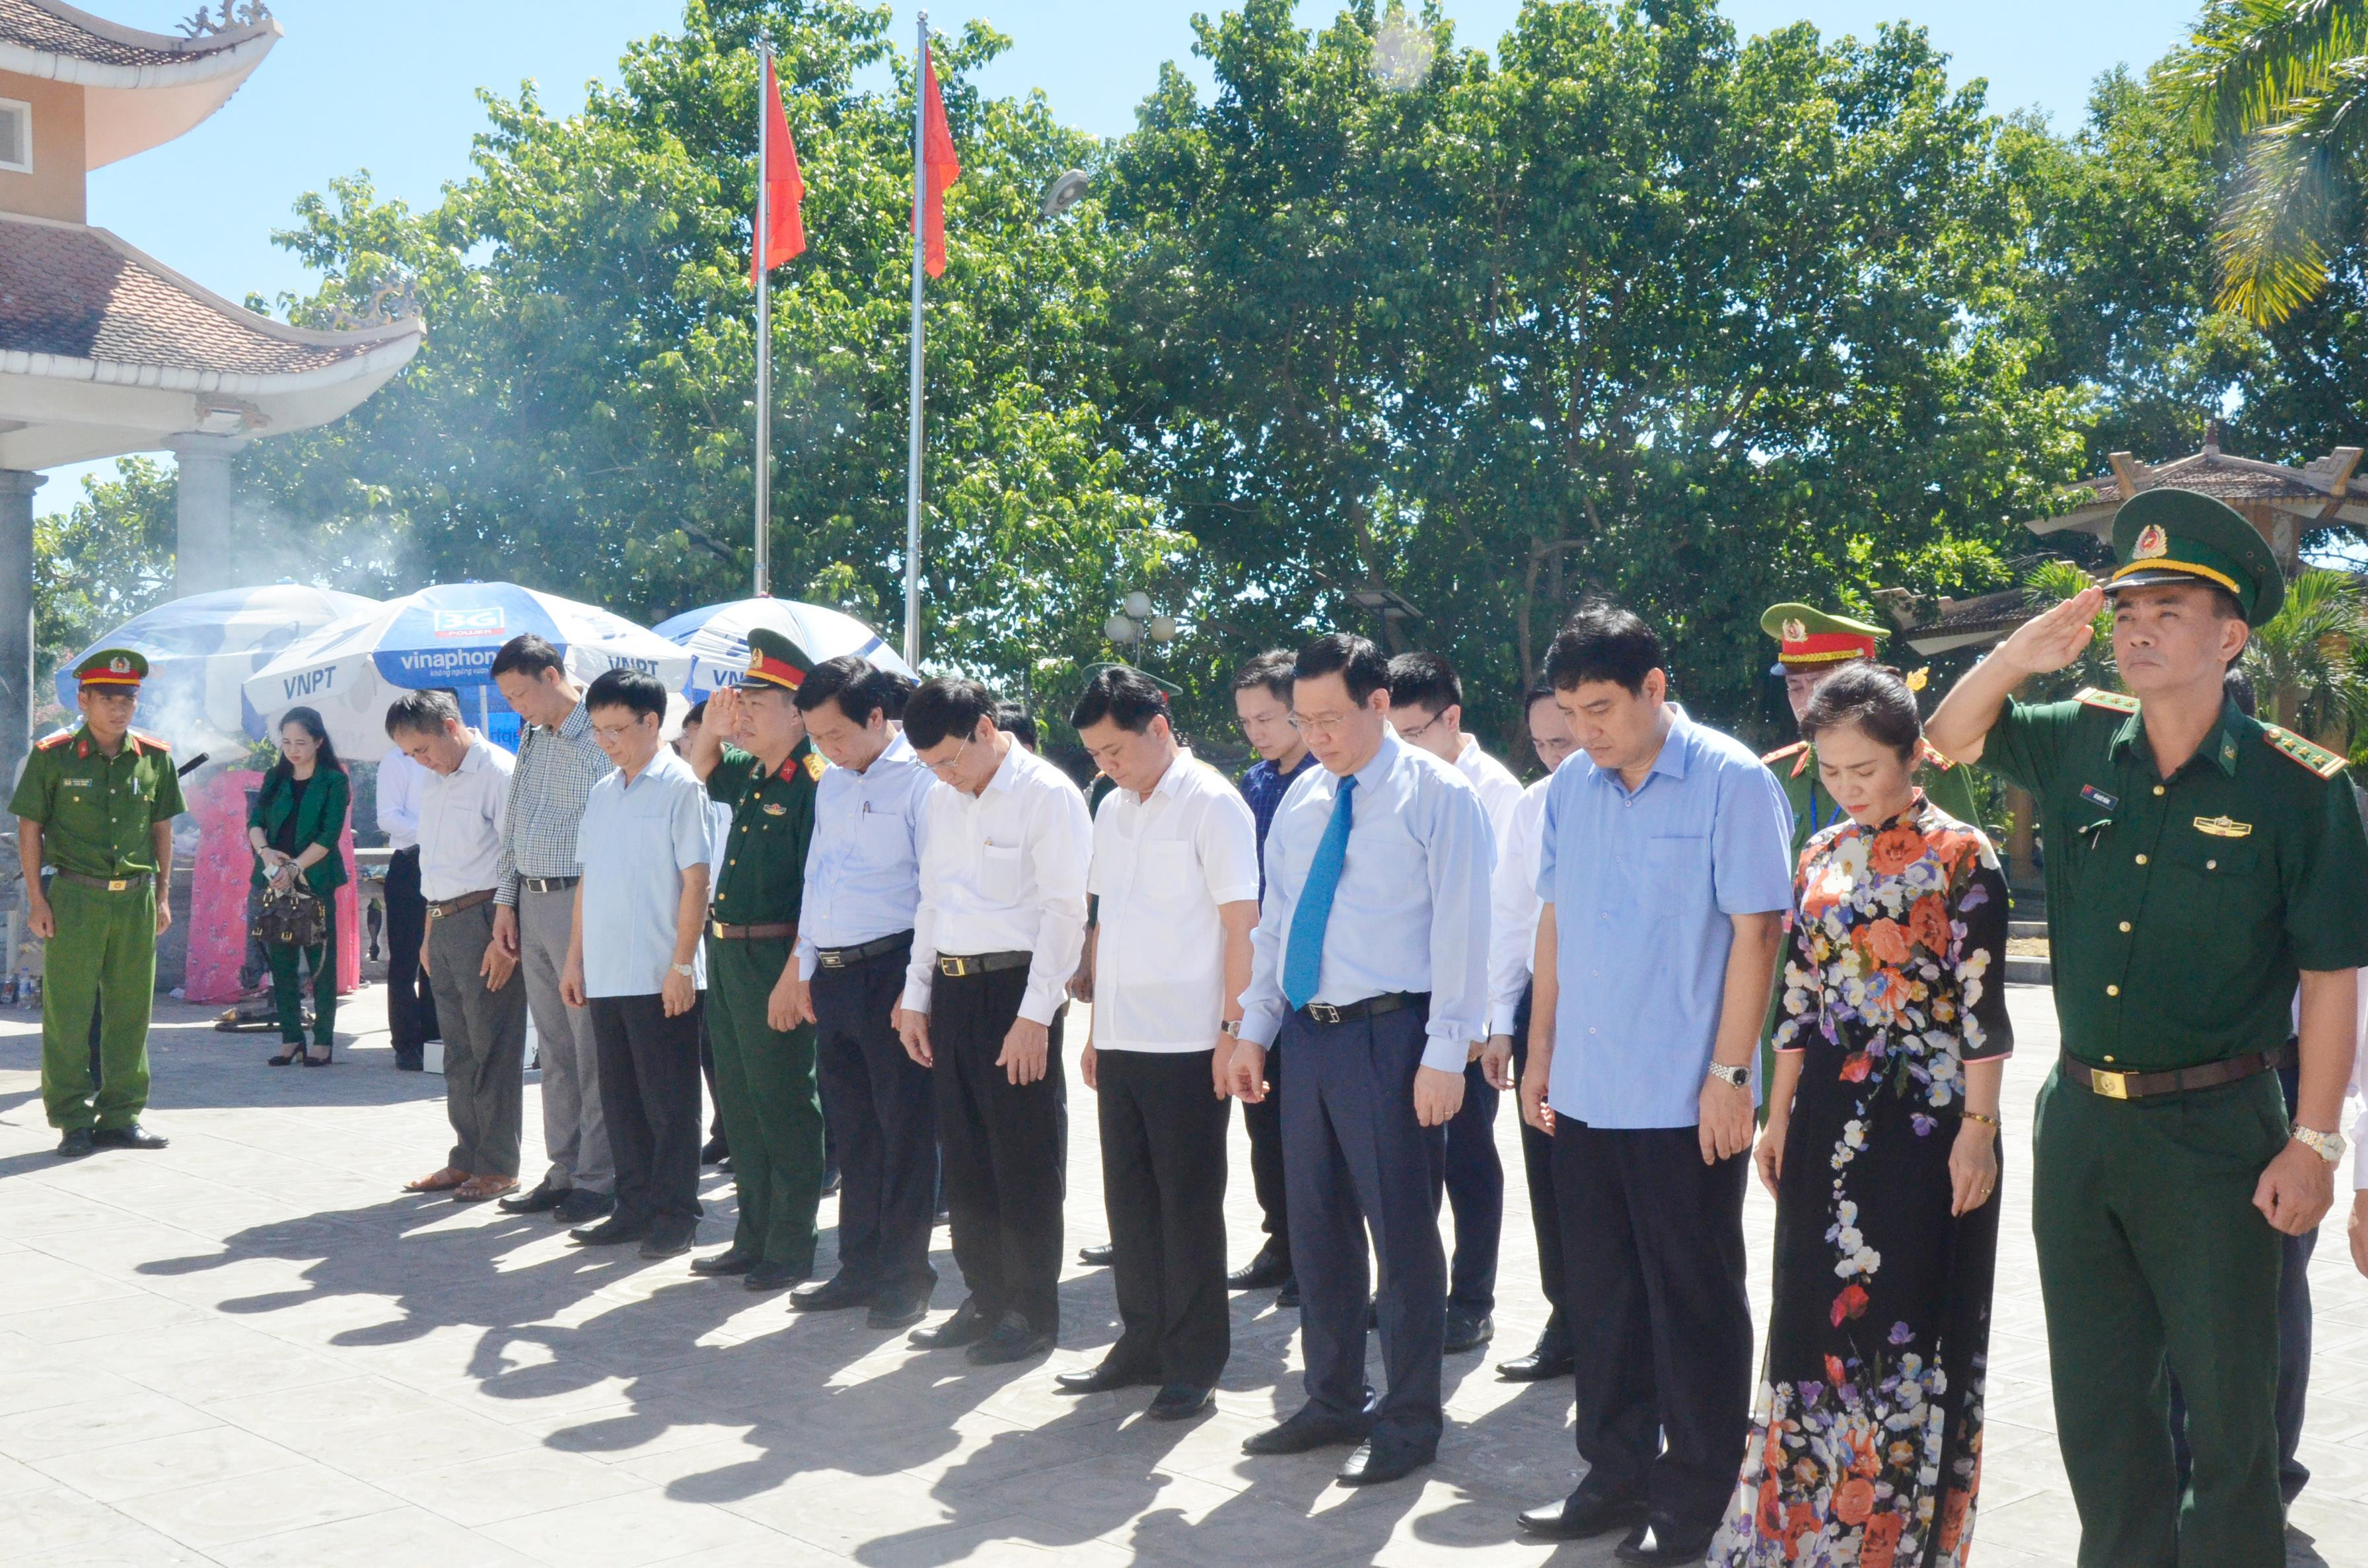 Phó Thủ tướng Vương Đình Huệ và các đại biểu tưởng niệm các anh hùng liệt sĩ tại Đài tưởng niệm Nghĩa trang Quốc tế Việt - Lào. Ảnh: Thanh Lê